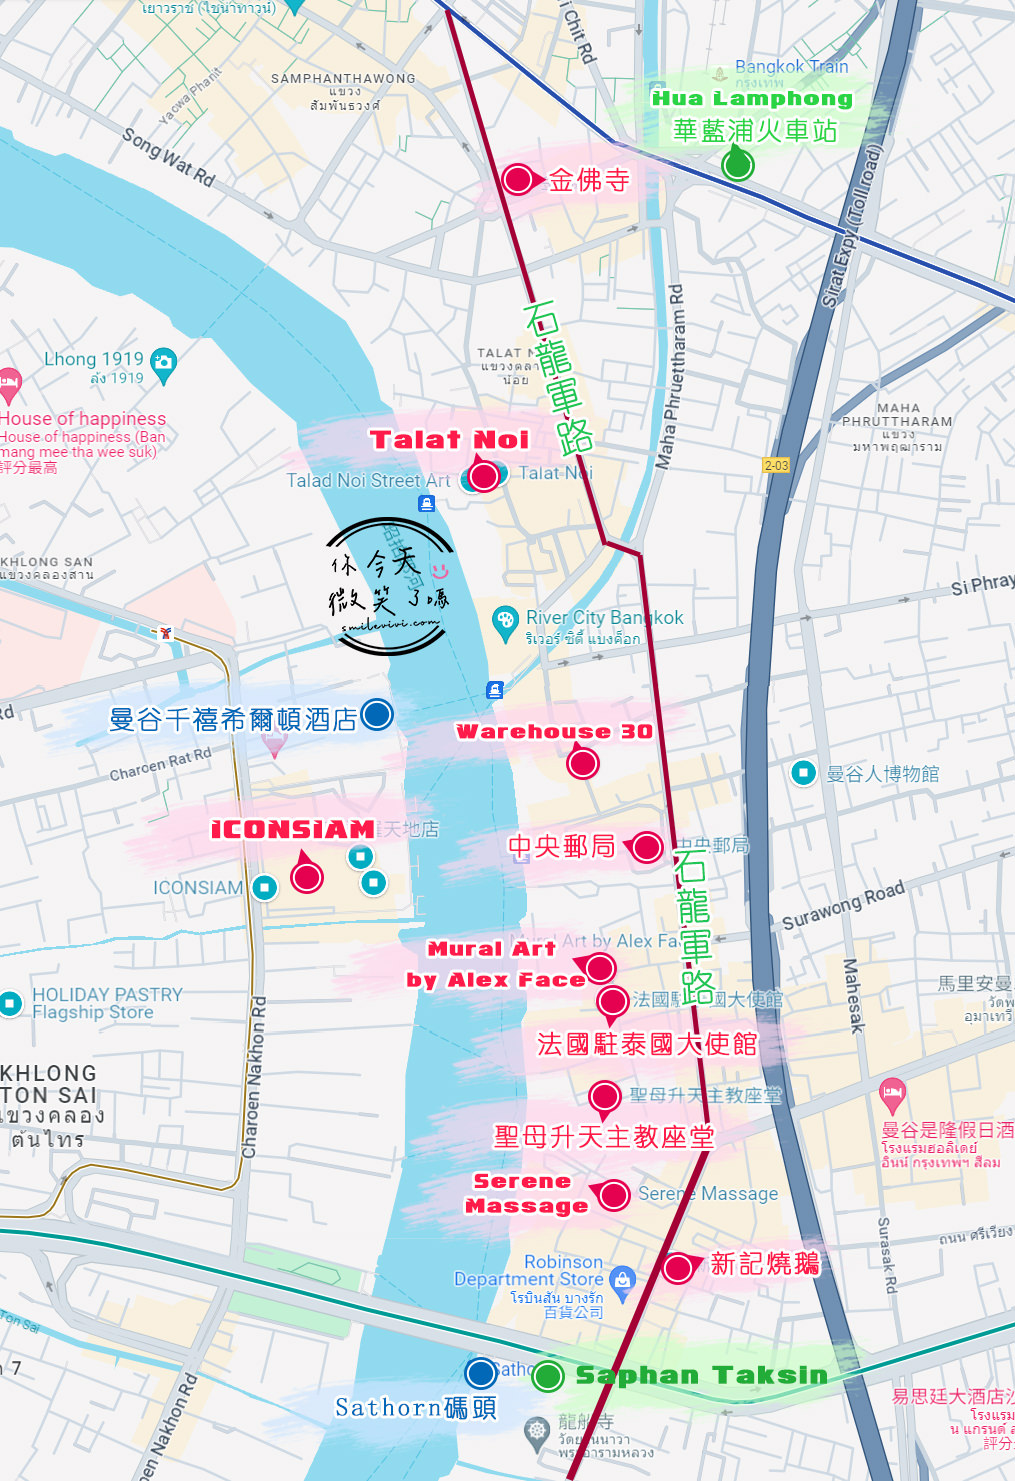 曼谷免費景點∥Talat Noi Street Art，塗鴉藝術小街︱網美打卡新景點彩繪巷，老巷弄超好拍，Ft.路邊街頭水果冰沙清涼美味︱曼谷石龍軍路、曼谷打卡景點 1 Charoen Krung map